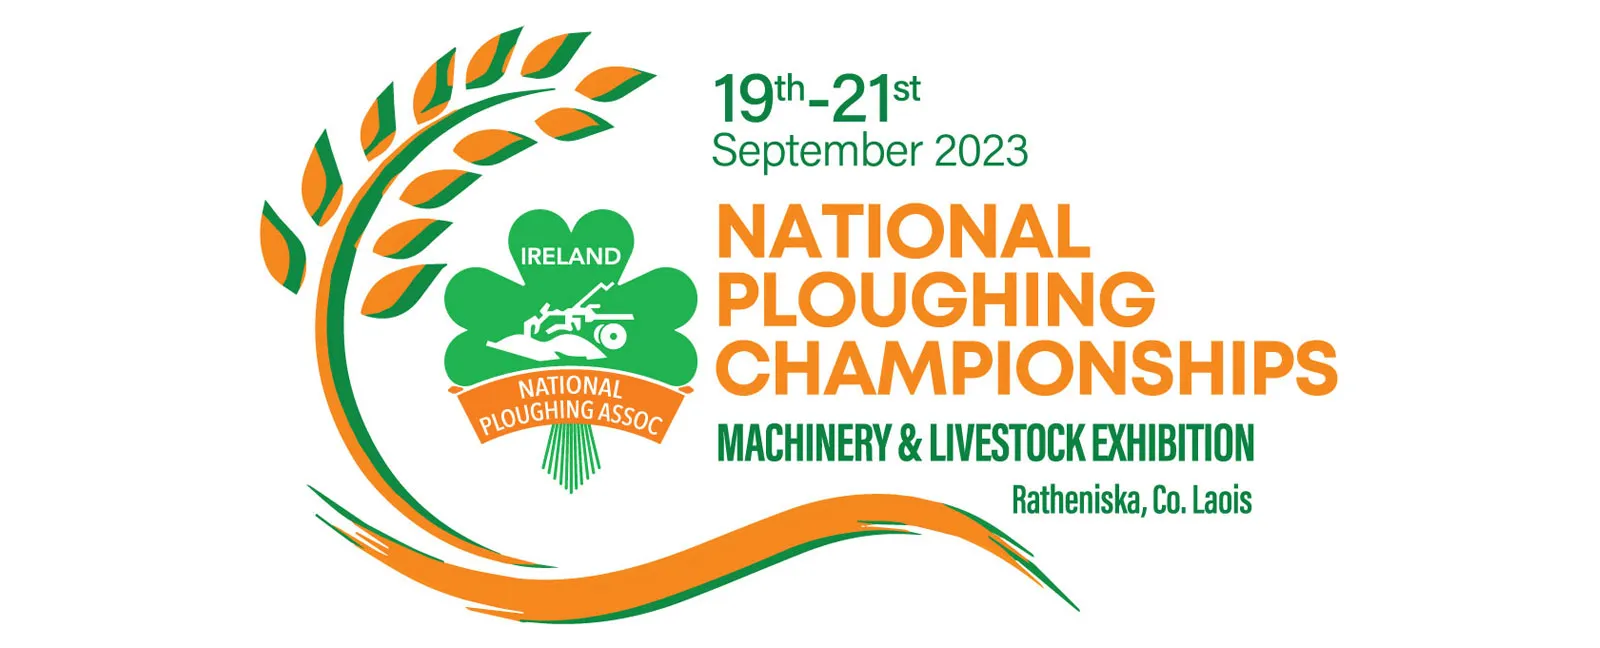 Irish Championship 2023